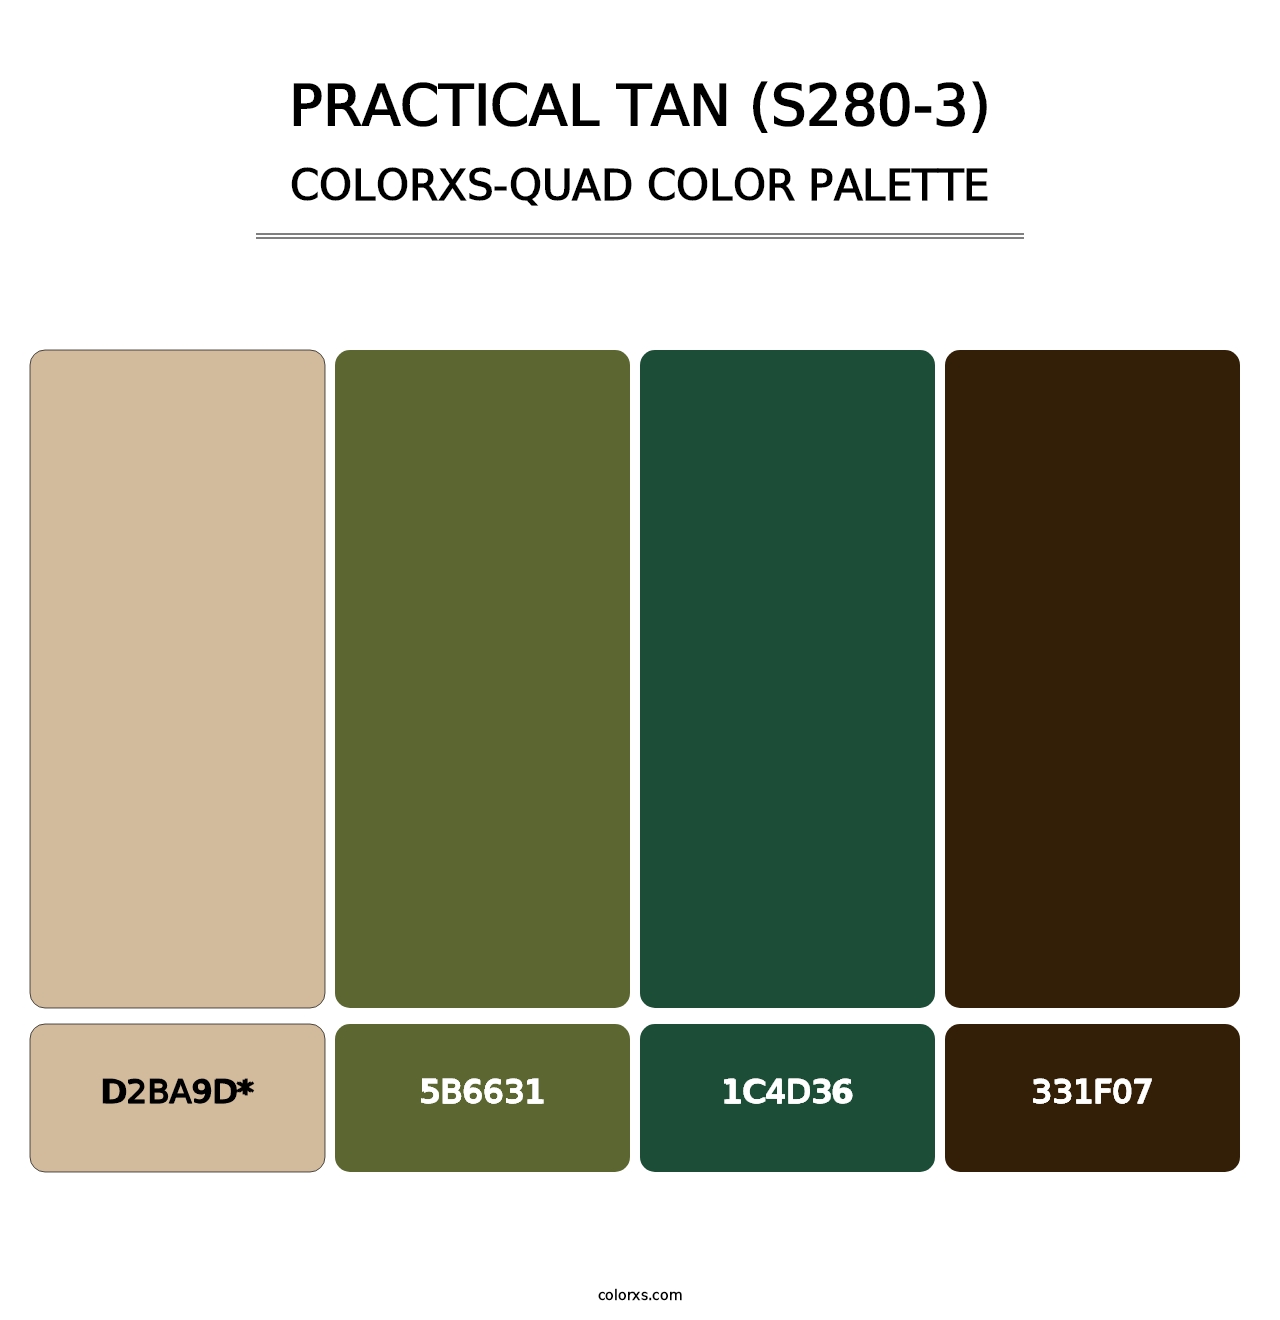 Practical Tan (S280-3) - Colorxs Quad Palette